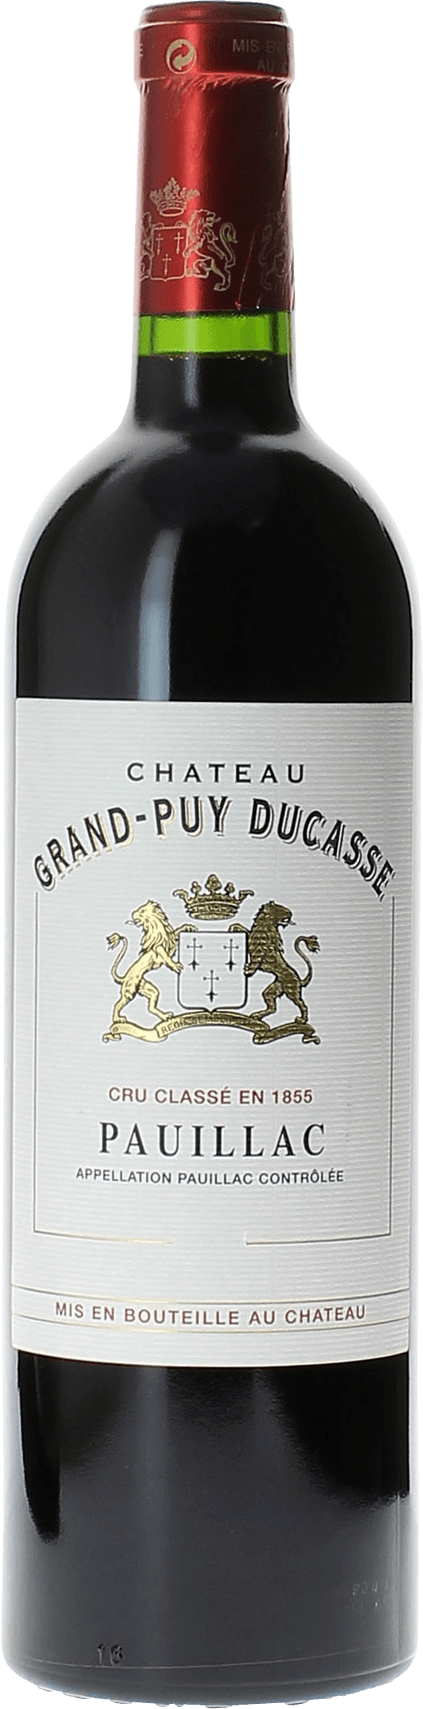 Grand puy ducasse 2020 5 me Grand cru class Pauillac, Bordeaux rouge